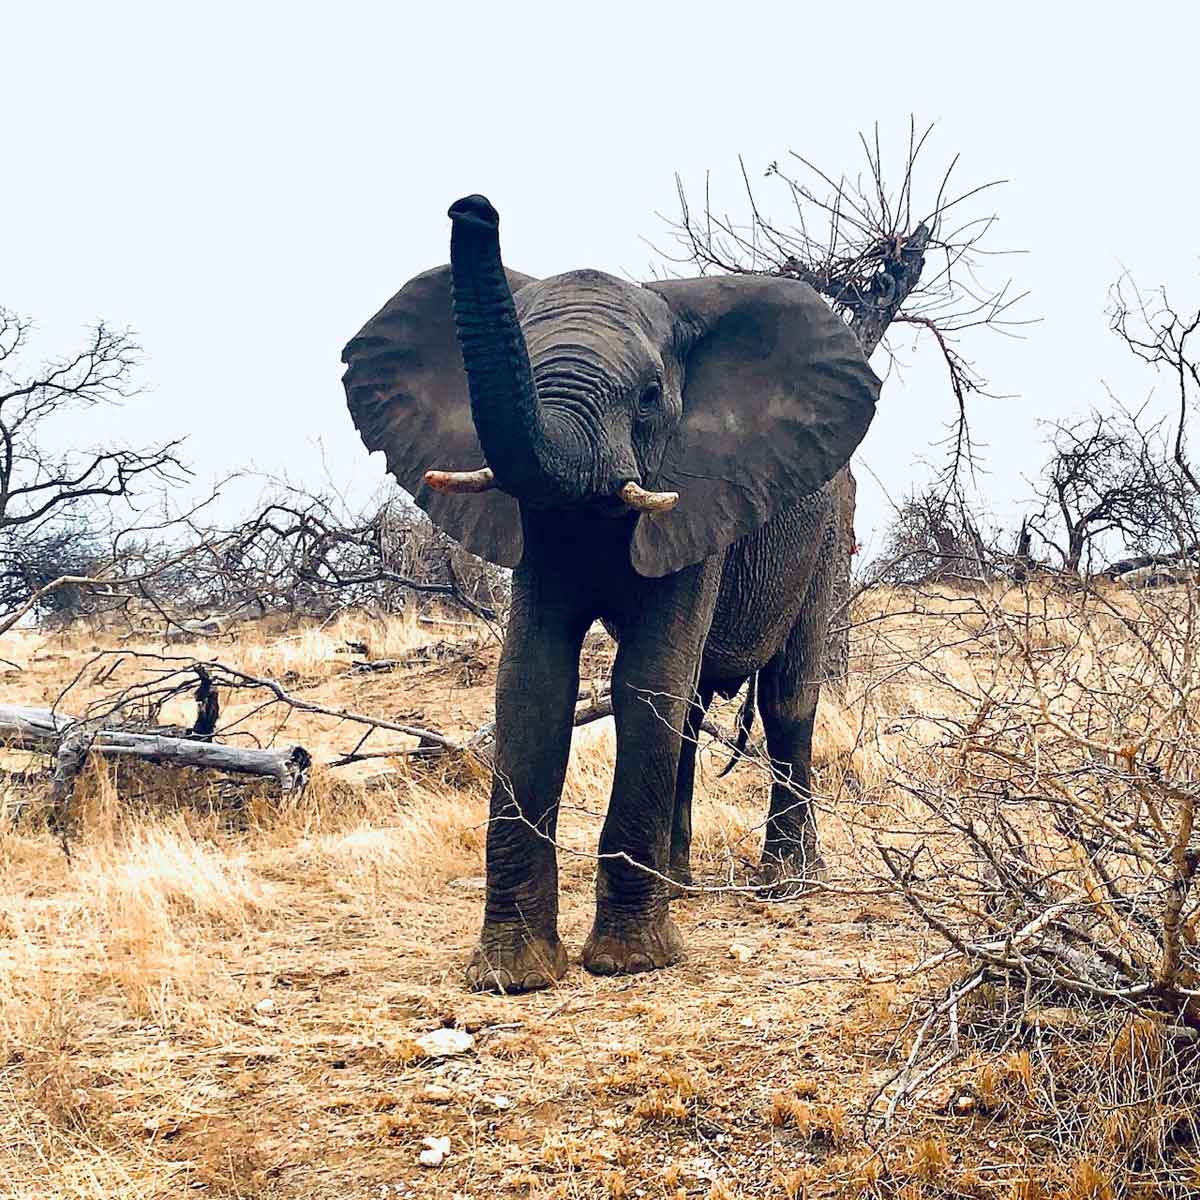 Spotting Elephants in Kruger